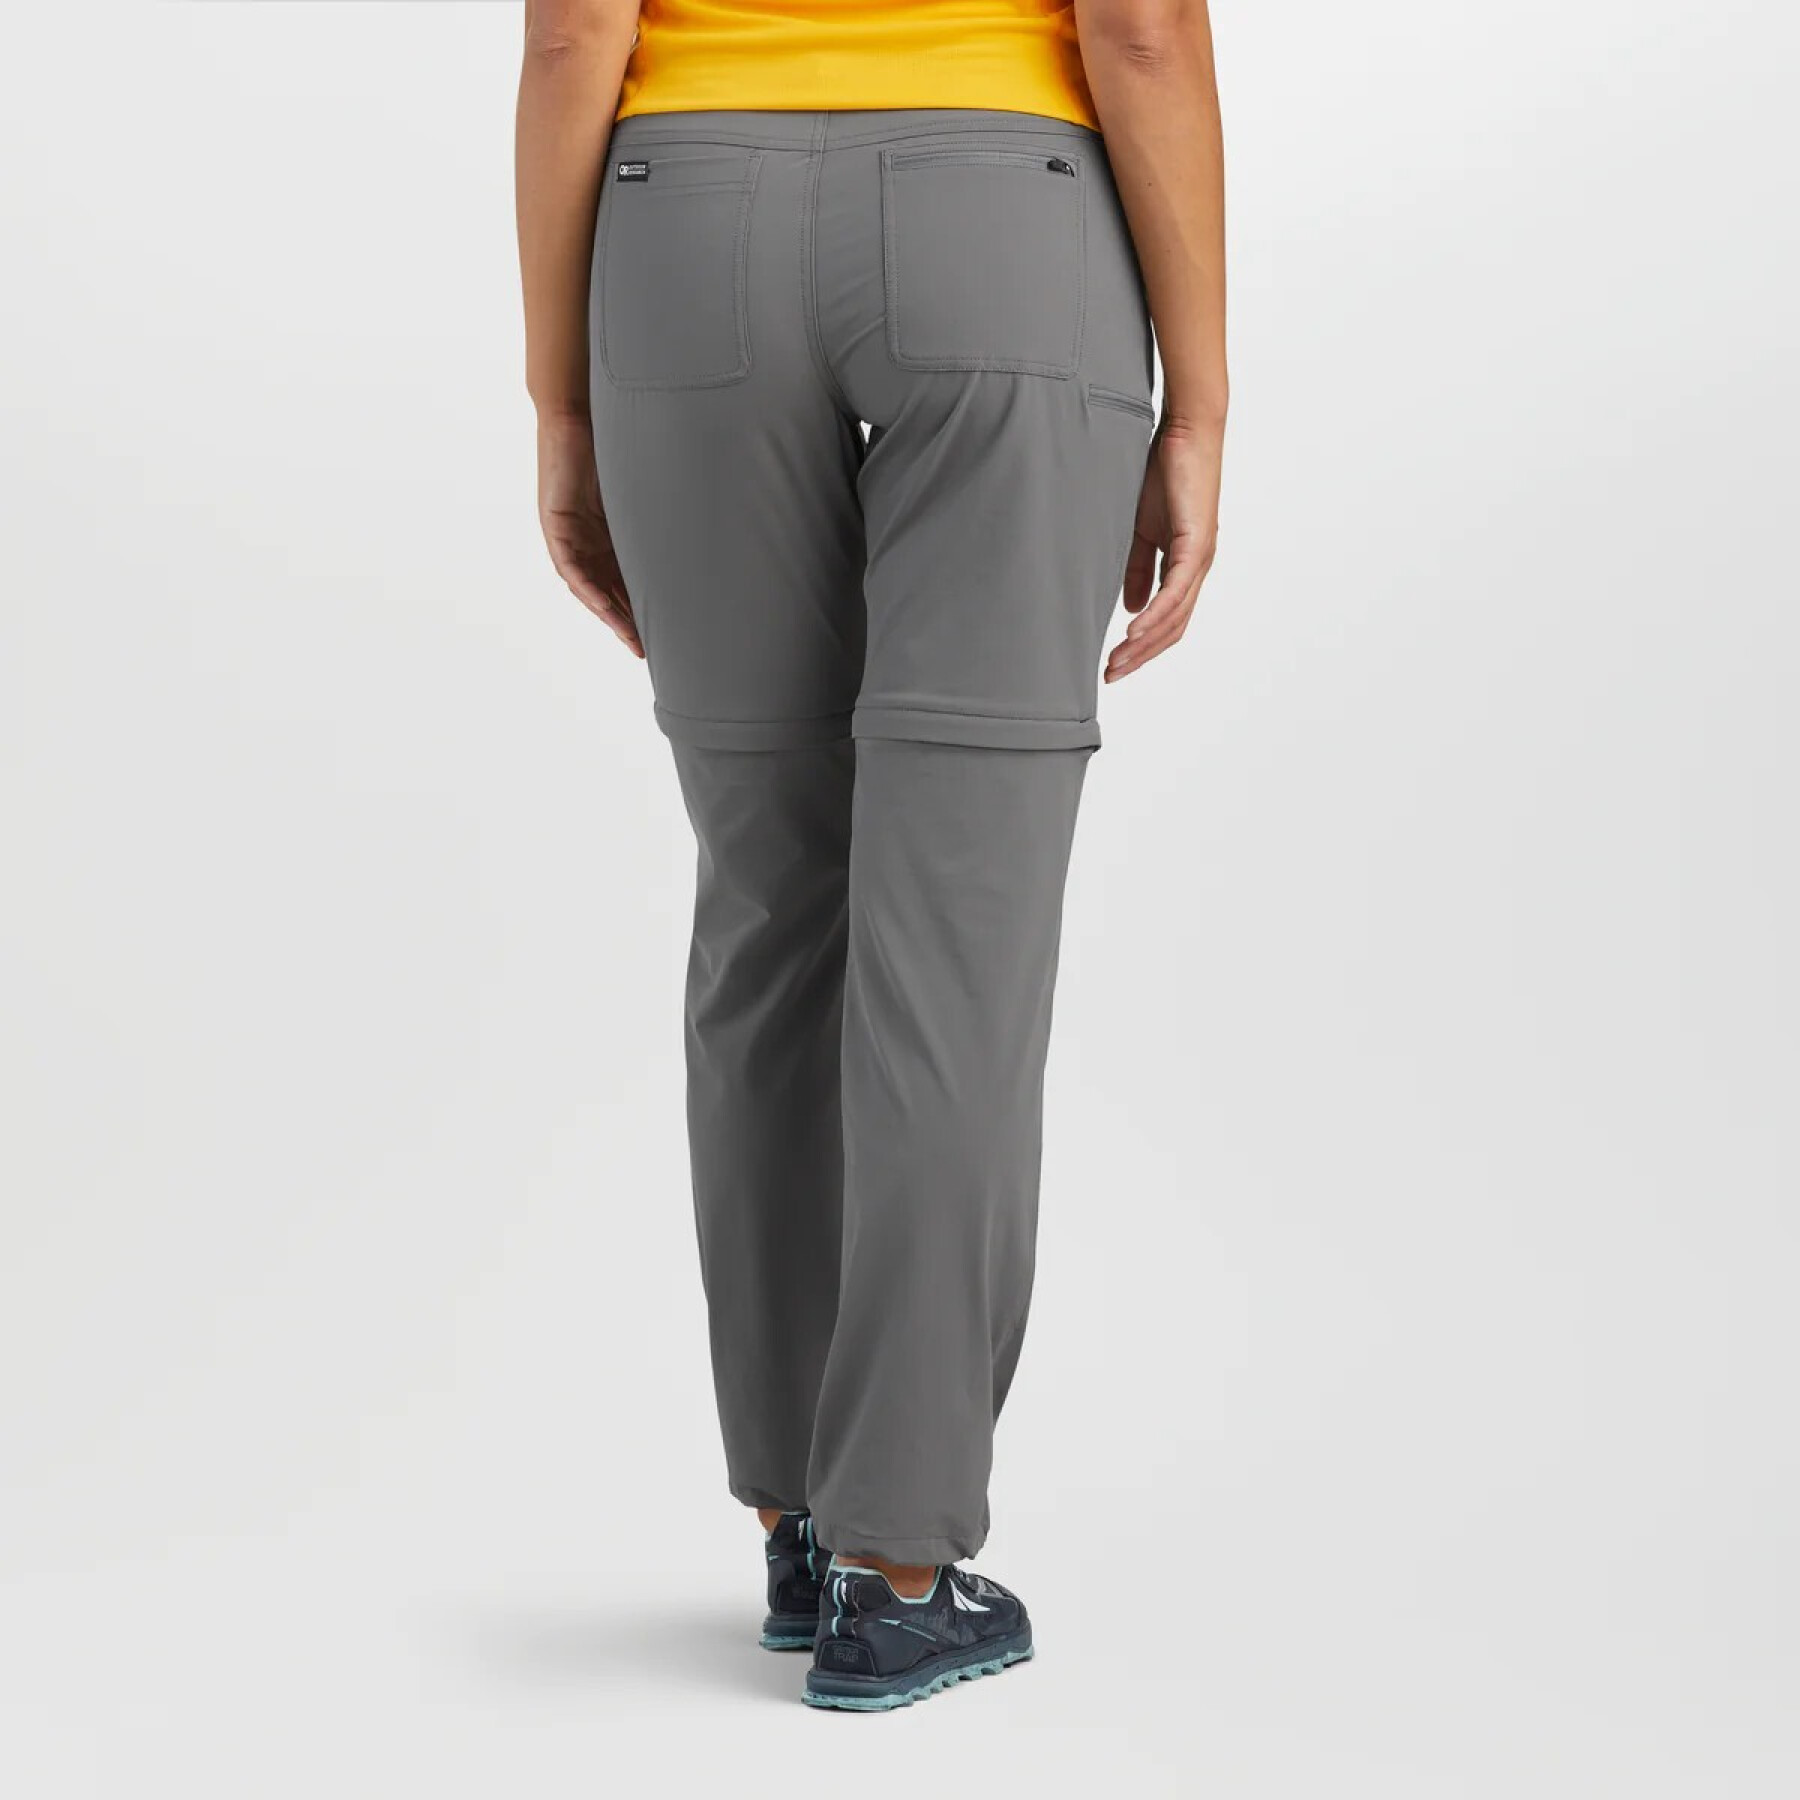 Pantalones cortos de mujer Outdoor Research Ferrosi Convert